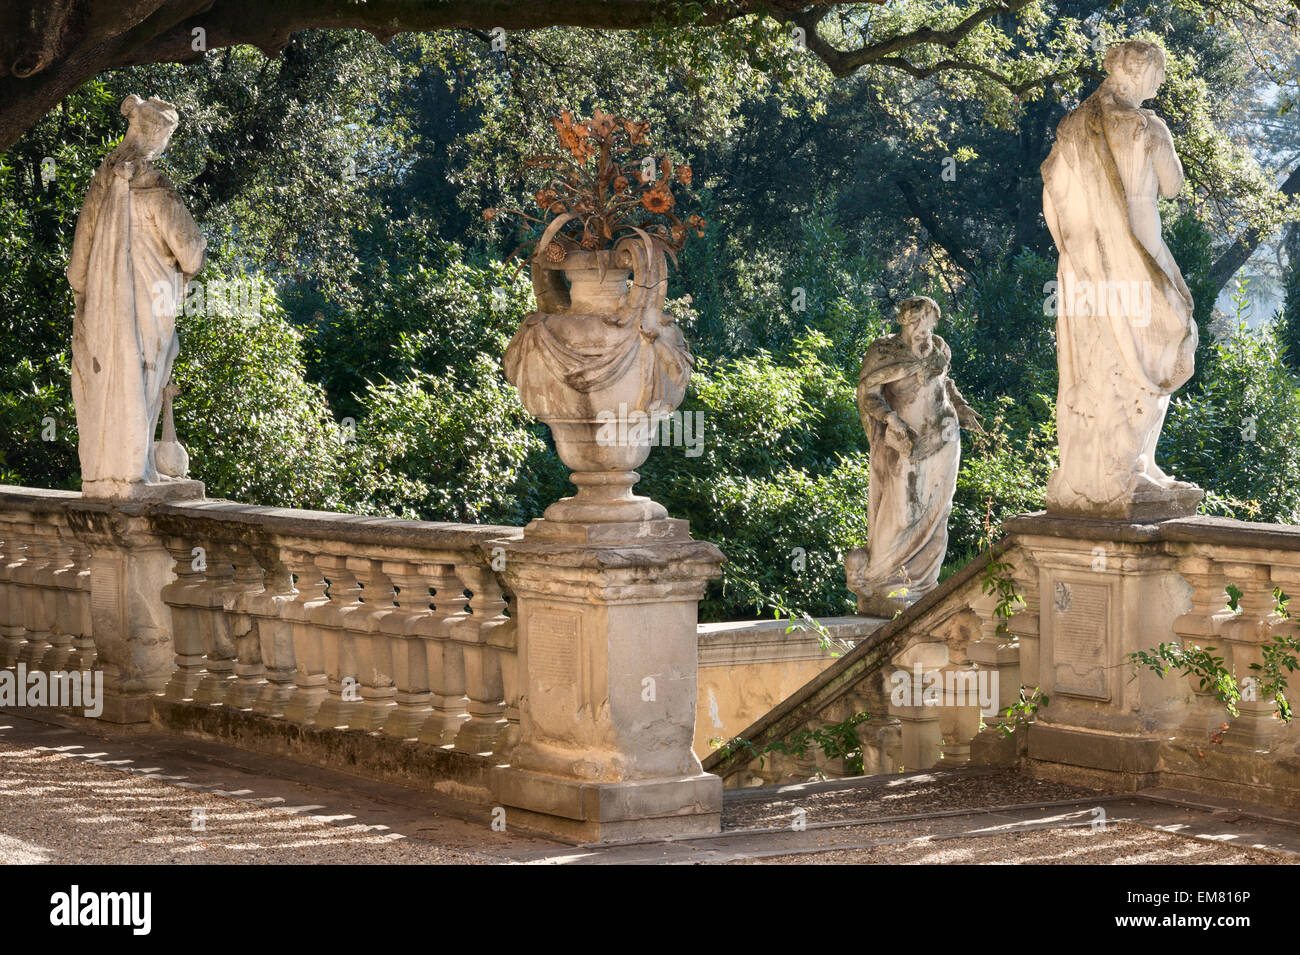 Villa La Pietra, Florence, Italie. Une fois la maison de Sir Harold Acton, qui appartient maintenant à l'Université de New York Banque D'Images